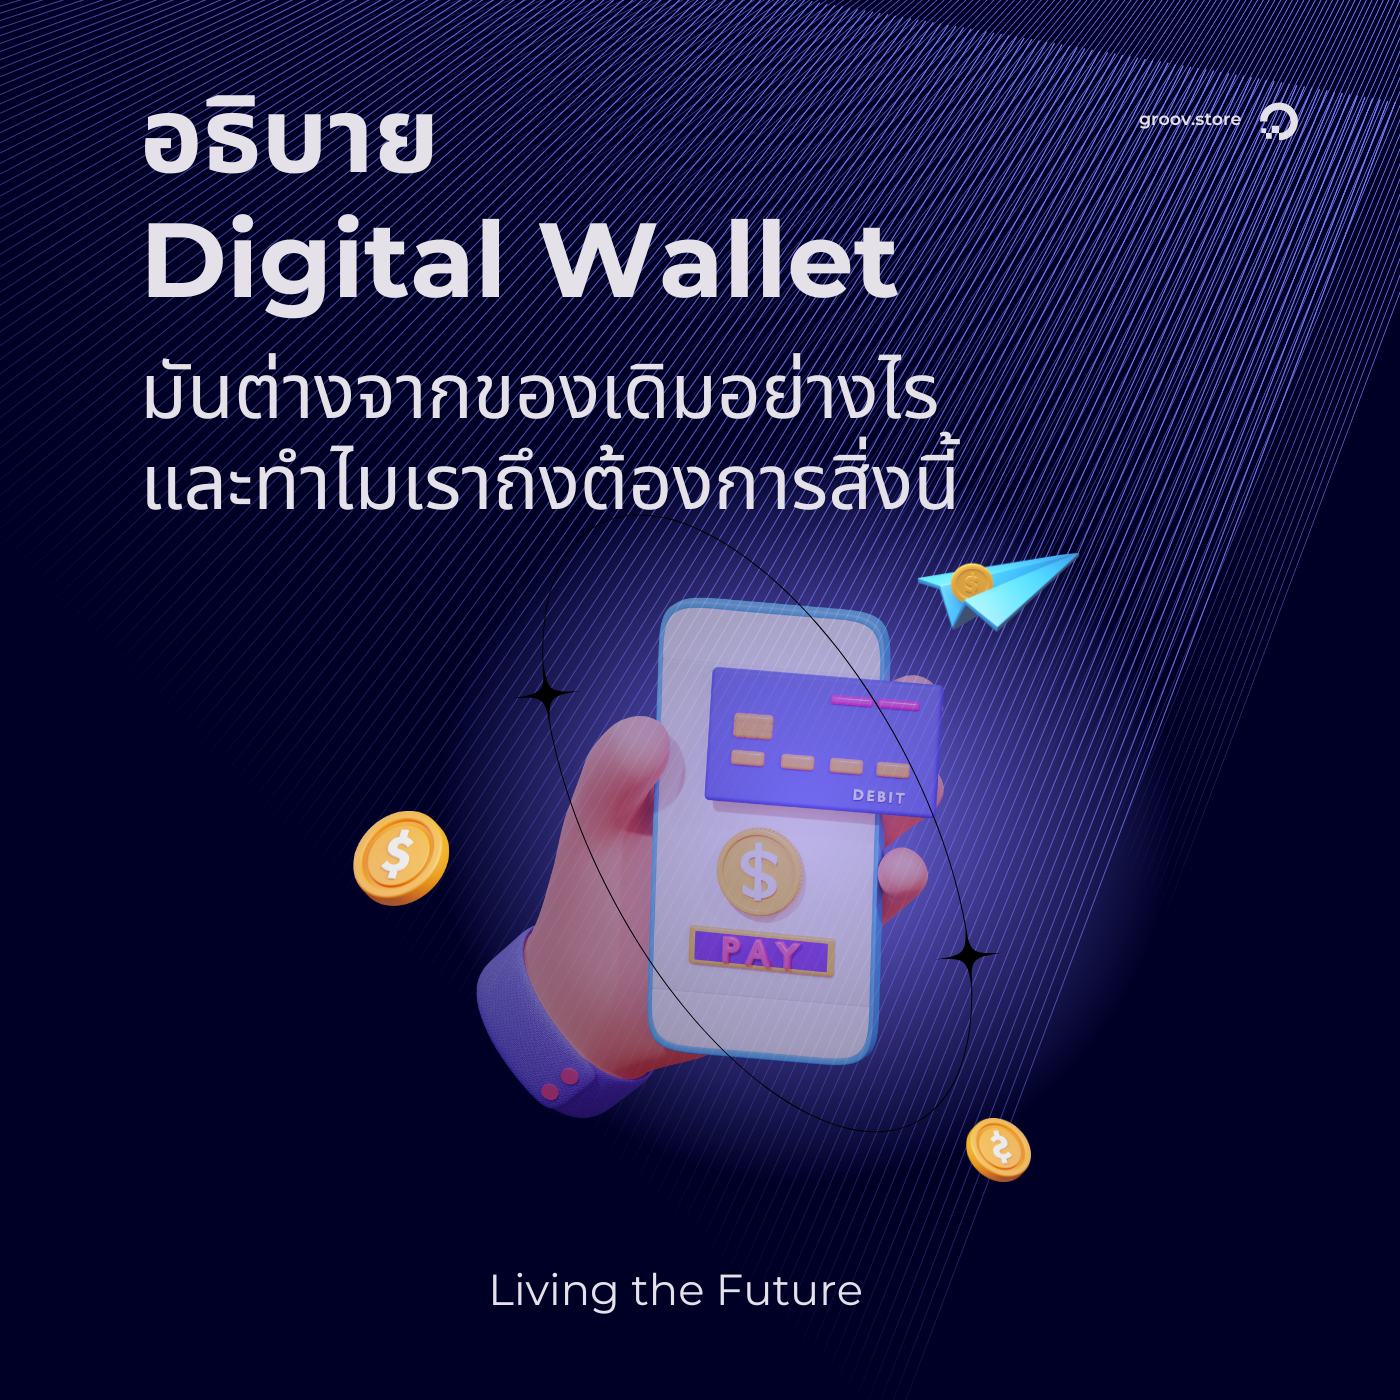 Living the Future: Digital Wallet มันต่างจากของเดิมยังไง และทำไมเราถึงต้องการสิ่งนี้